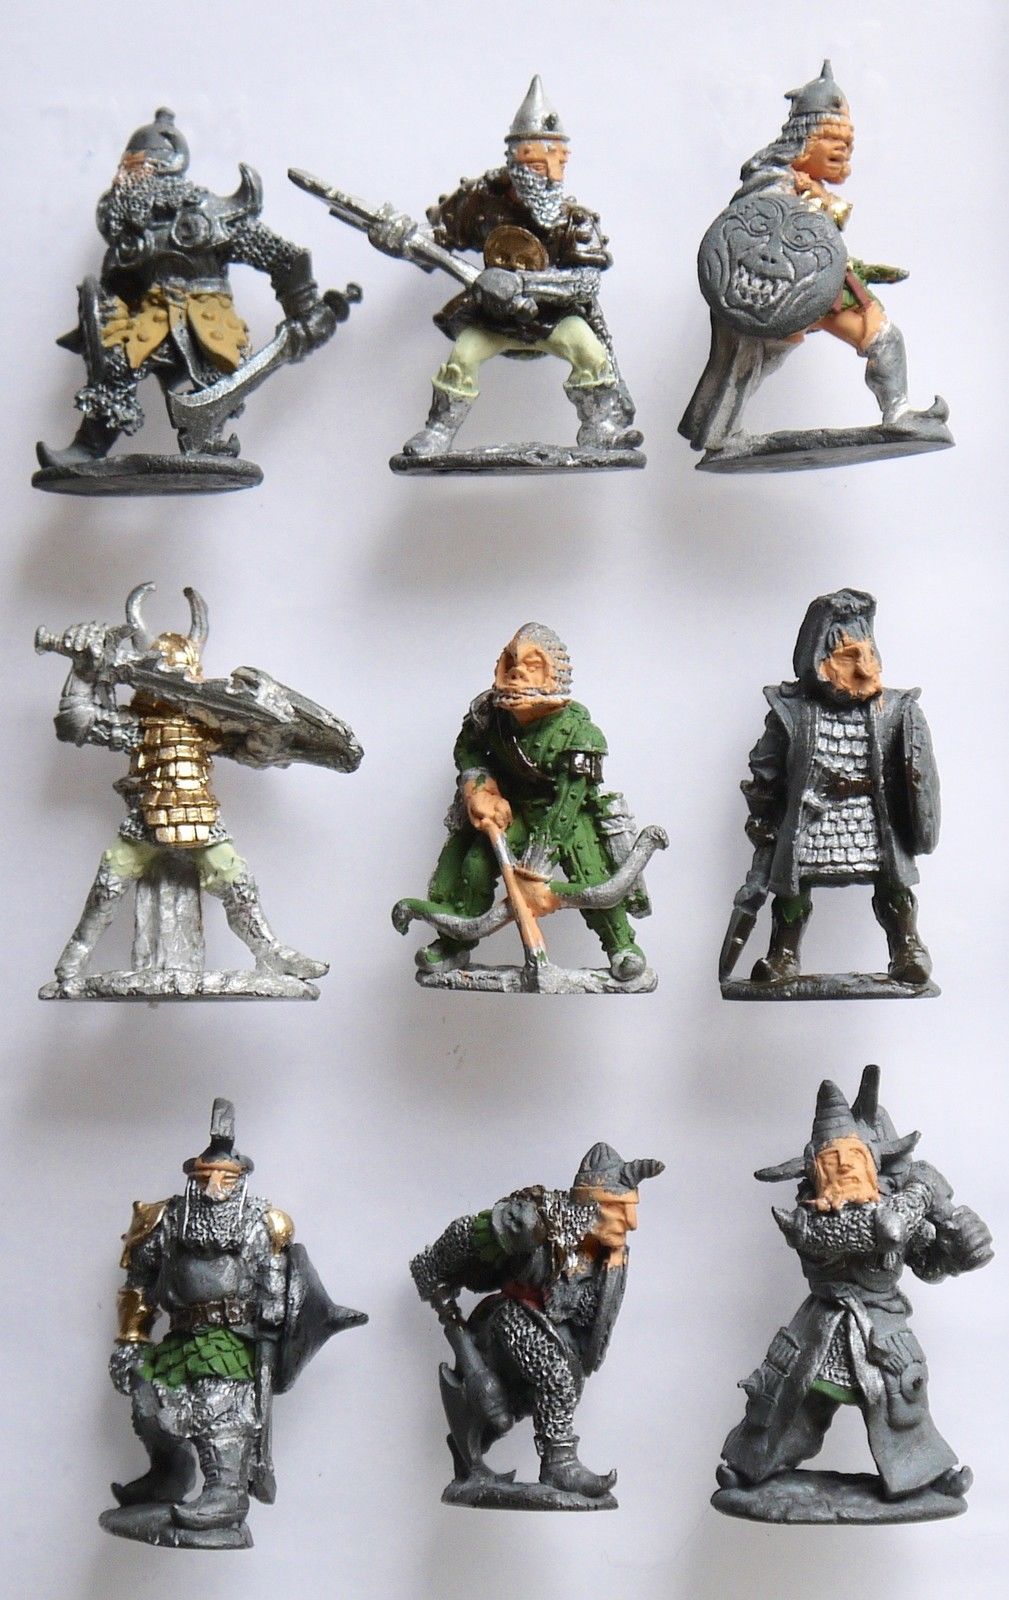 Pre-slotta Citadel Chaos fighter 1984 Specialty Set 3 - The Knights of Chaos 25mm pre-slotta Citadel miniatures